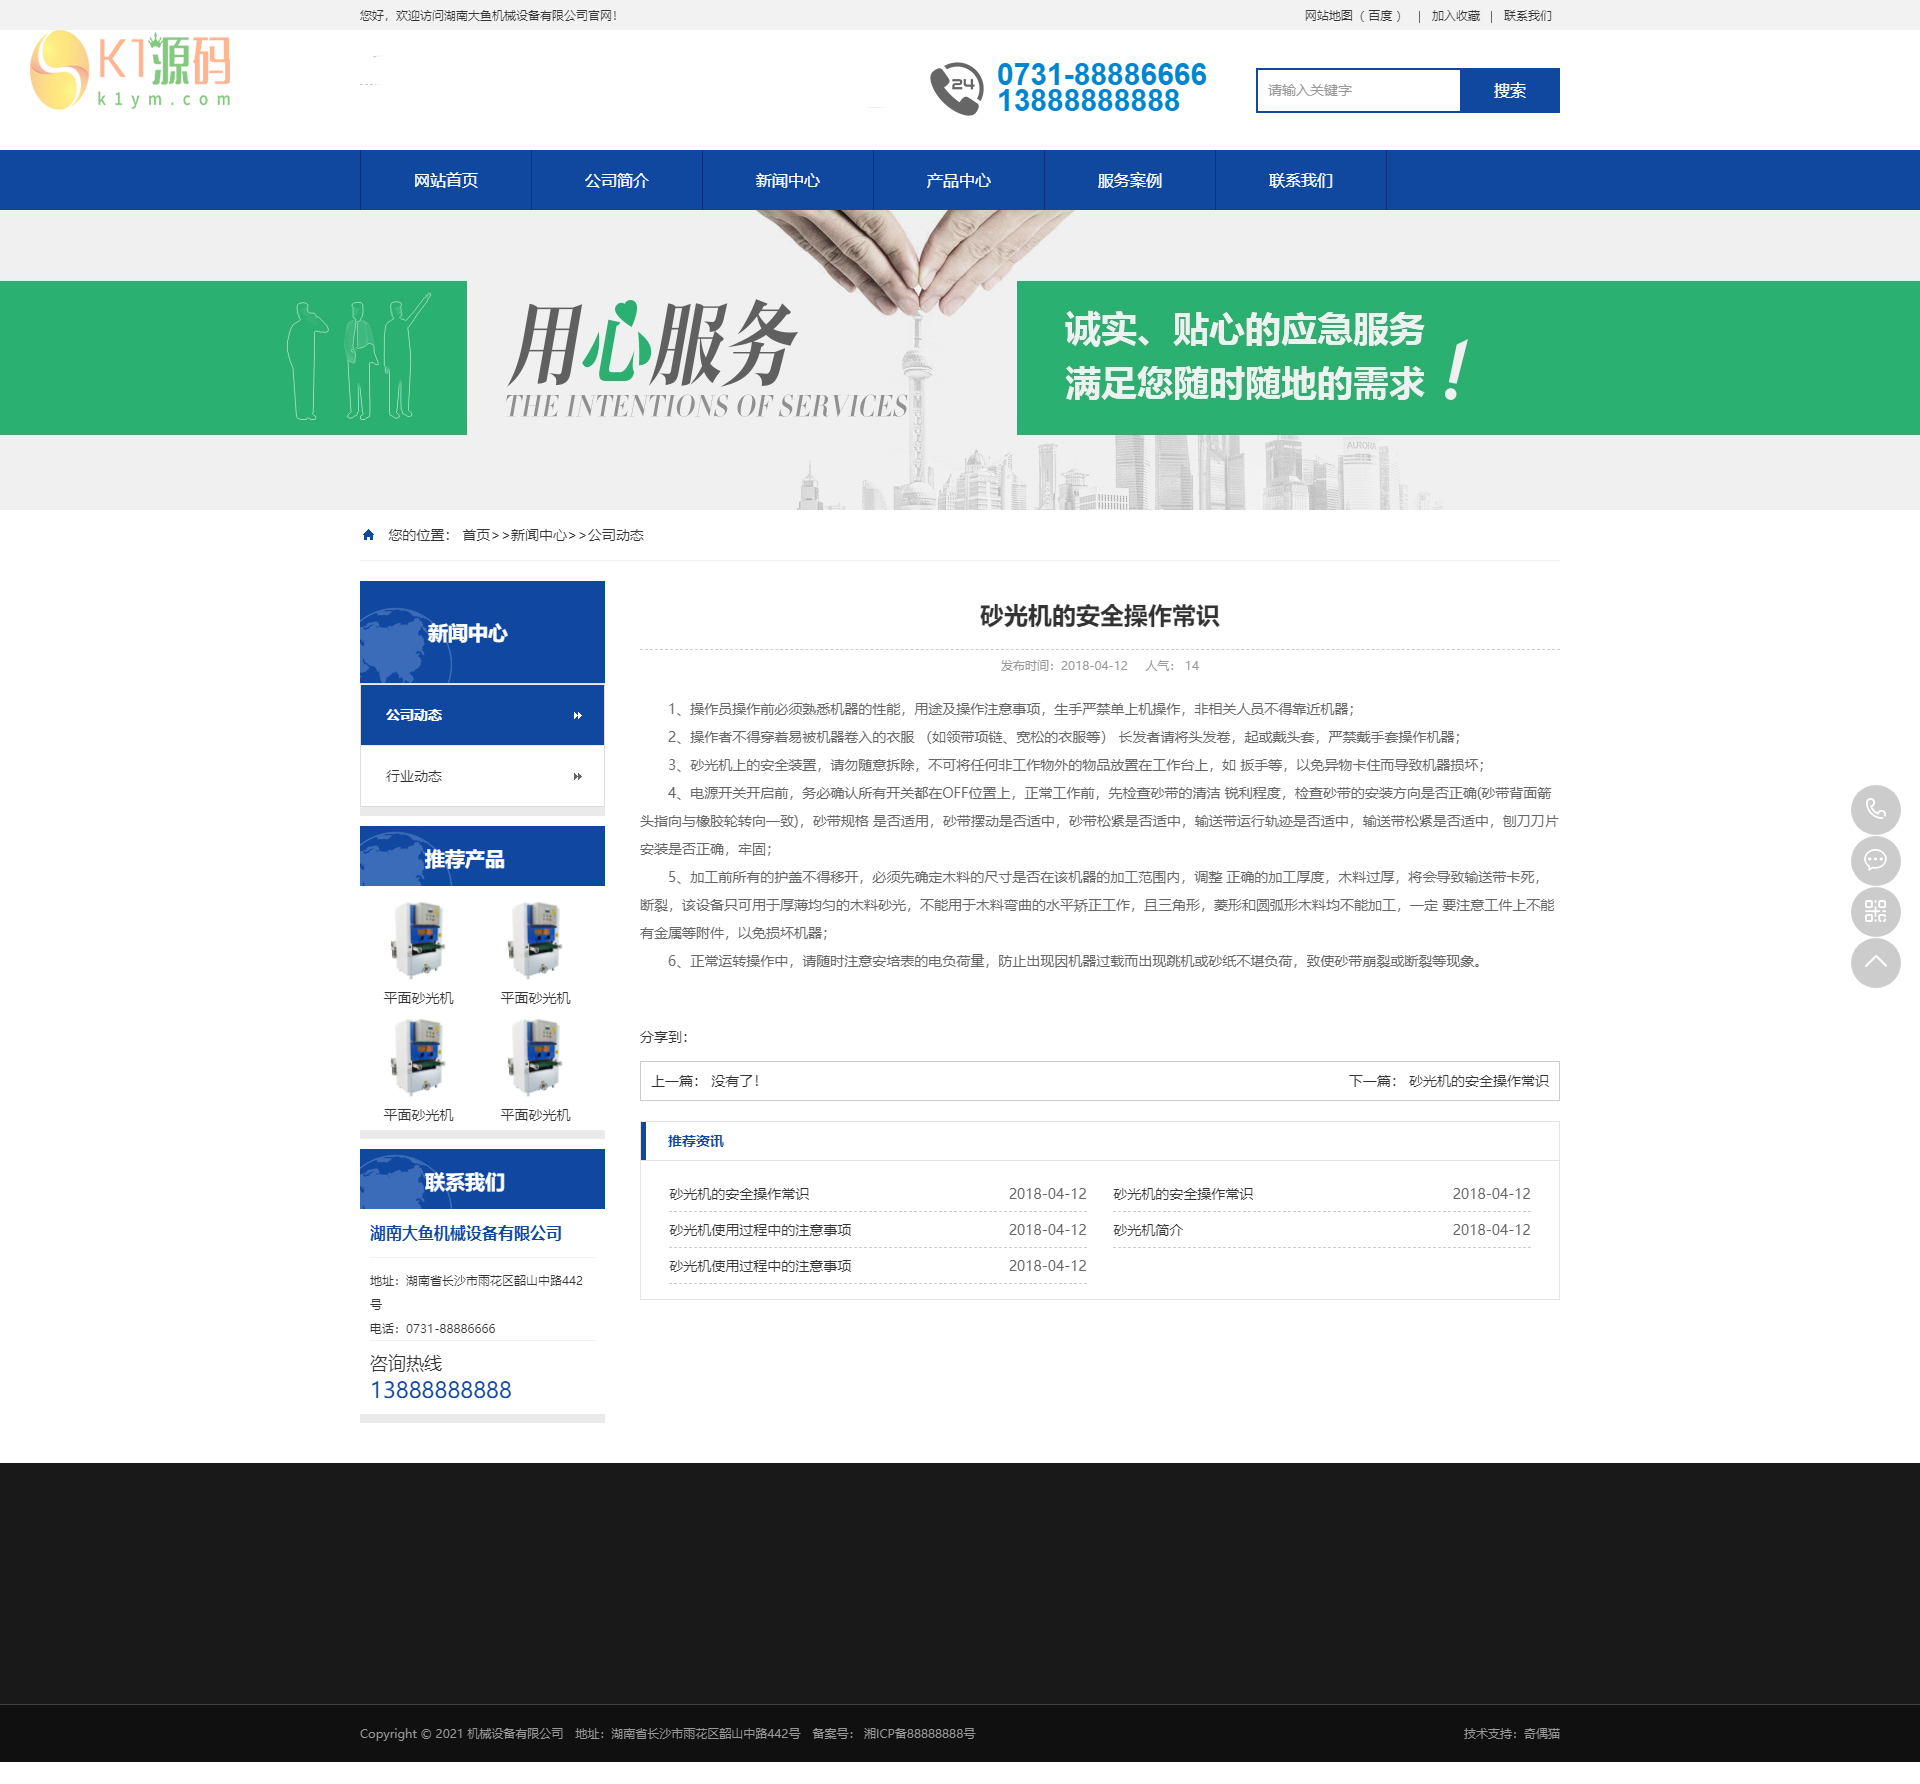 PbootCms蓝色五金机械设备企业网站模板通用营销型网站源码下载「亲测源码」插图1